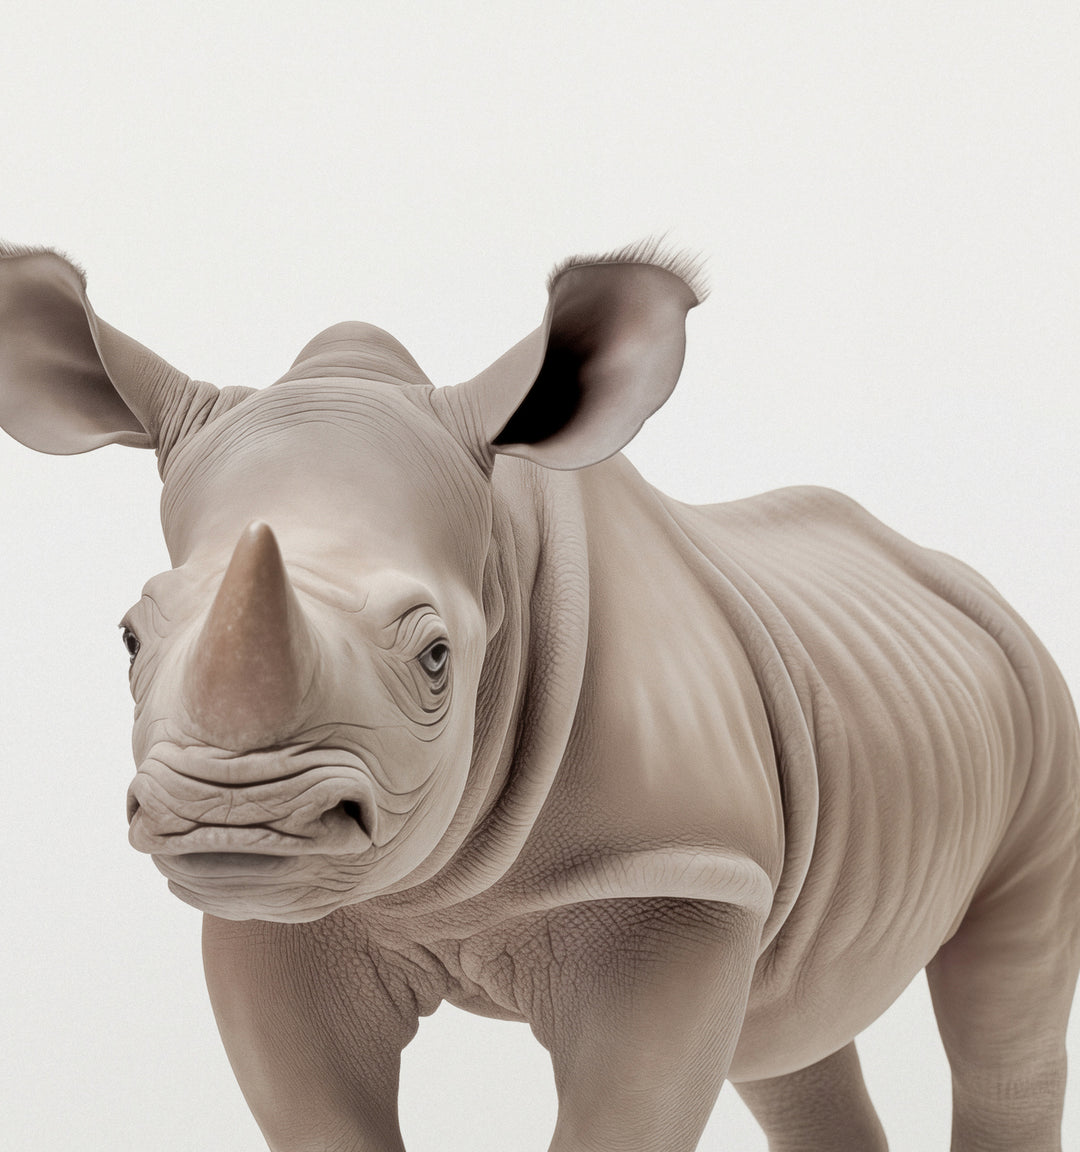 Studio Rhino Art Print